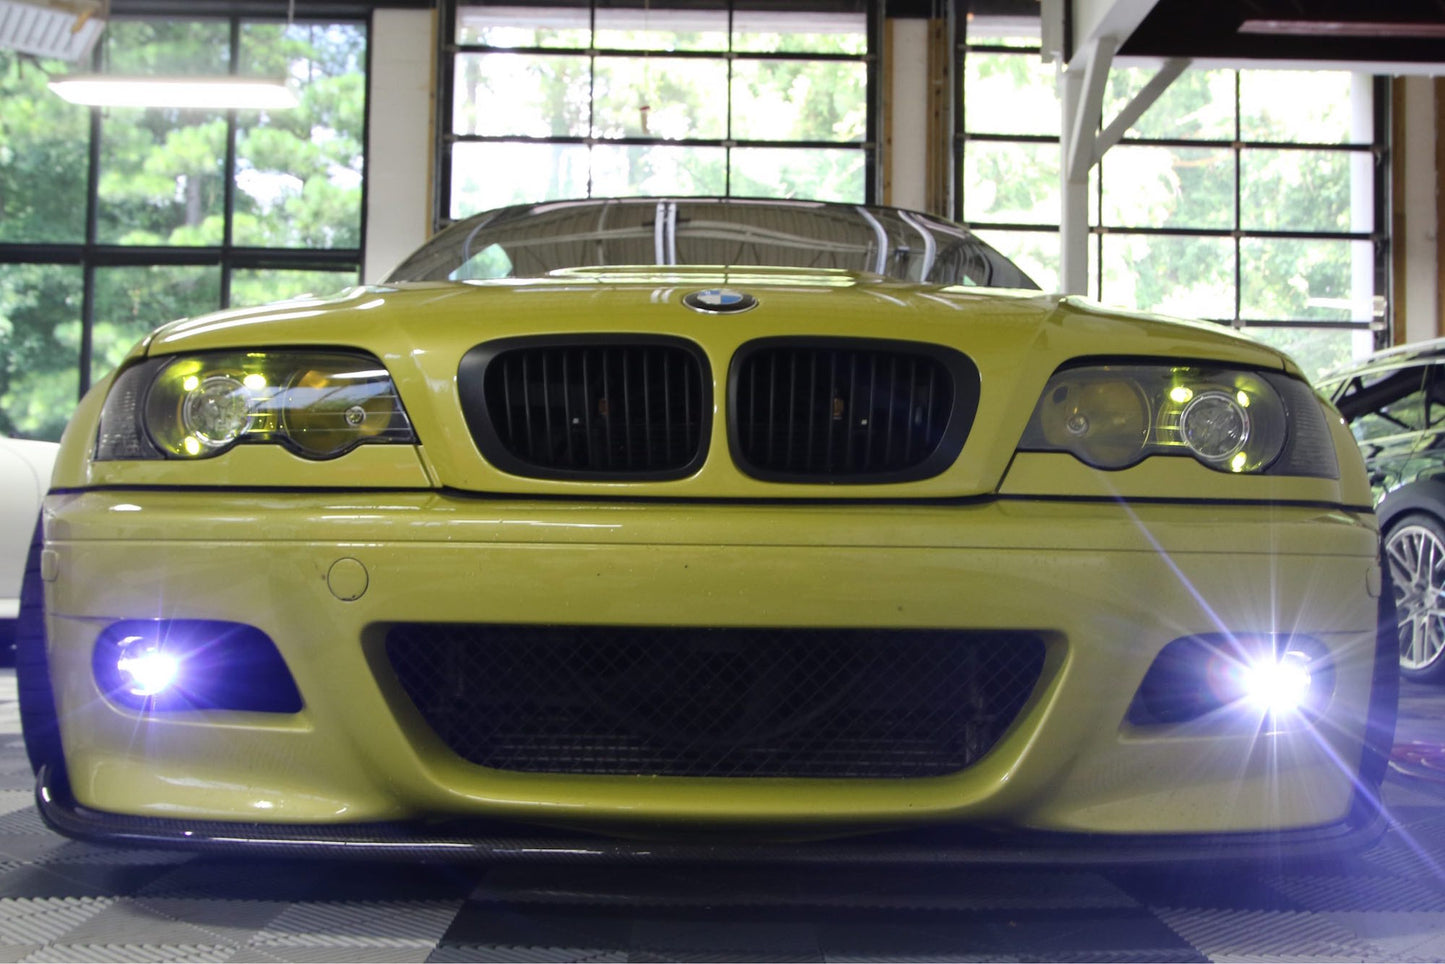 Morimoto XB LED Fogs: Type BMW (Pair)